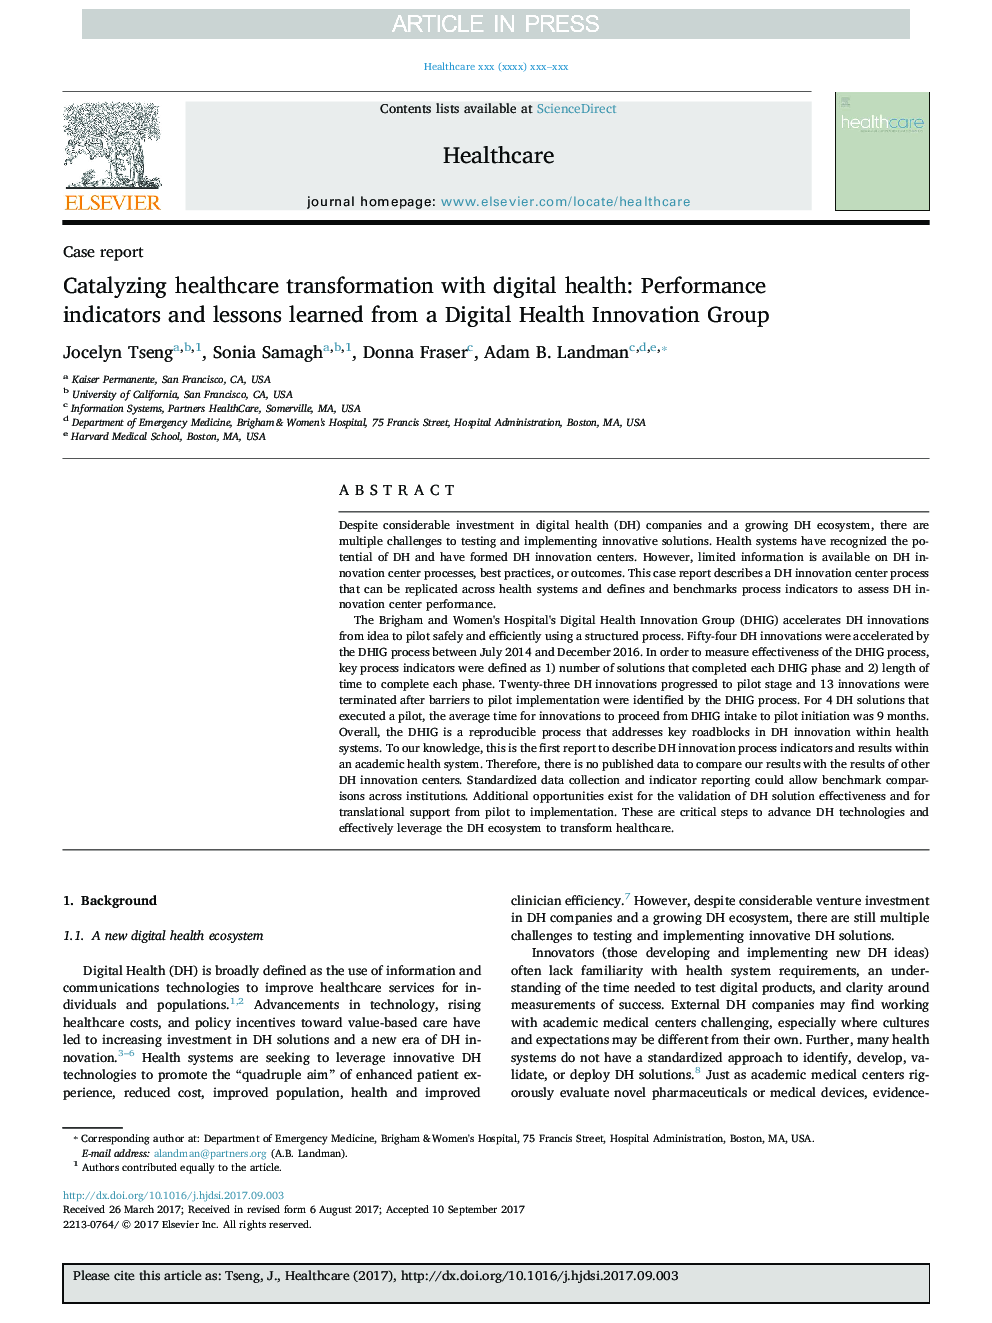 تغییرات بهداشتی درمانی با سلامت دیجیتال: شاخص های عملکردی و درس هایی که از یک گروه نوآوری بهداشتی دیجیتالی آموخته شده است 